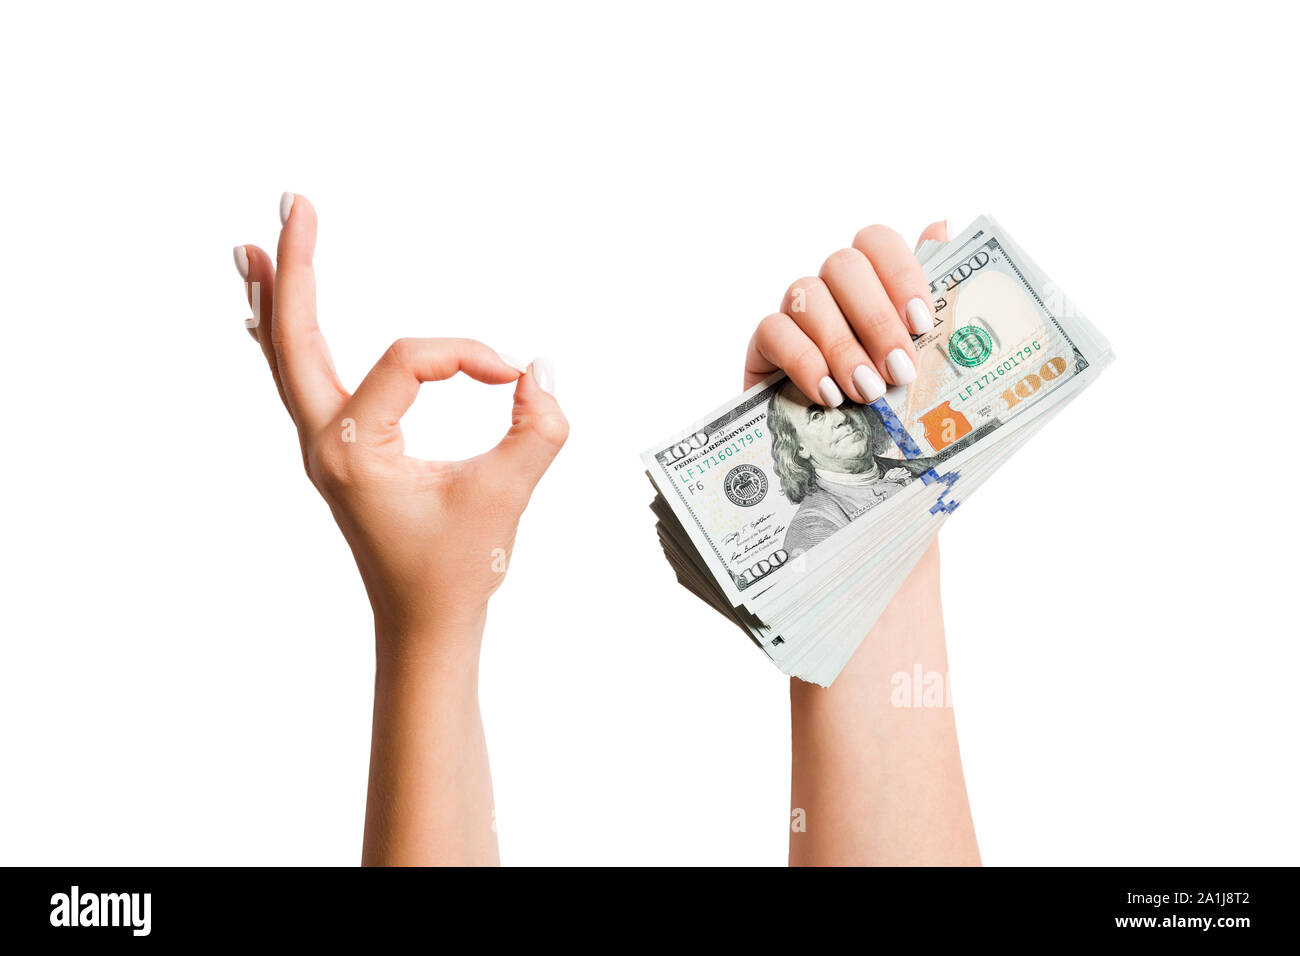 Isolierte Bild von Dollar in einer Hand und zeigen okay Geste mit der anderen Hand. Blick von oben auf die Geschäftsidee. Stockfoto